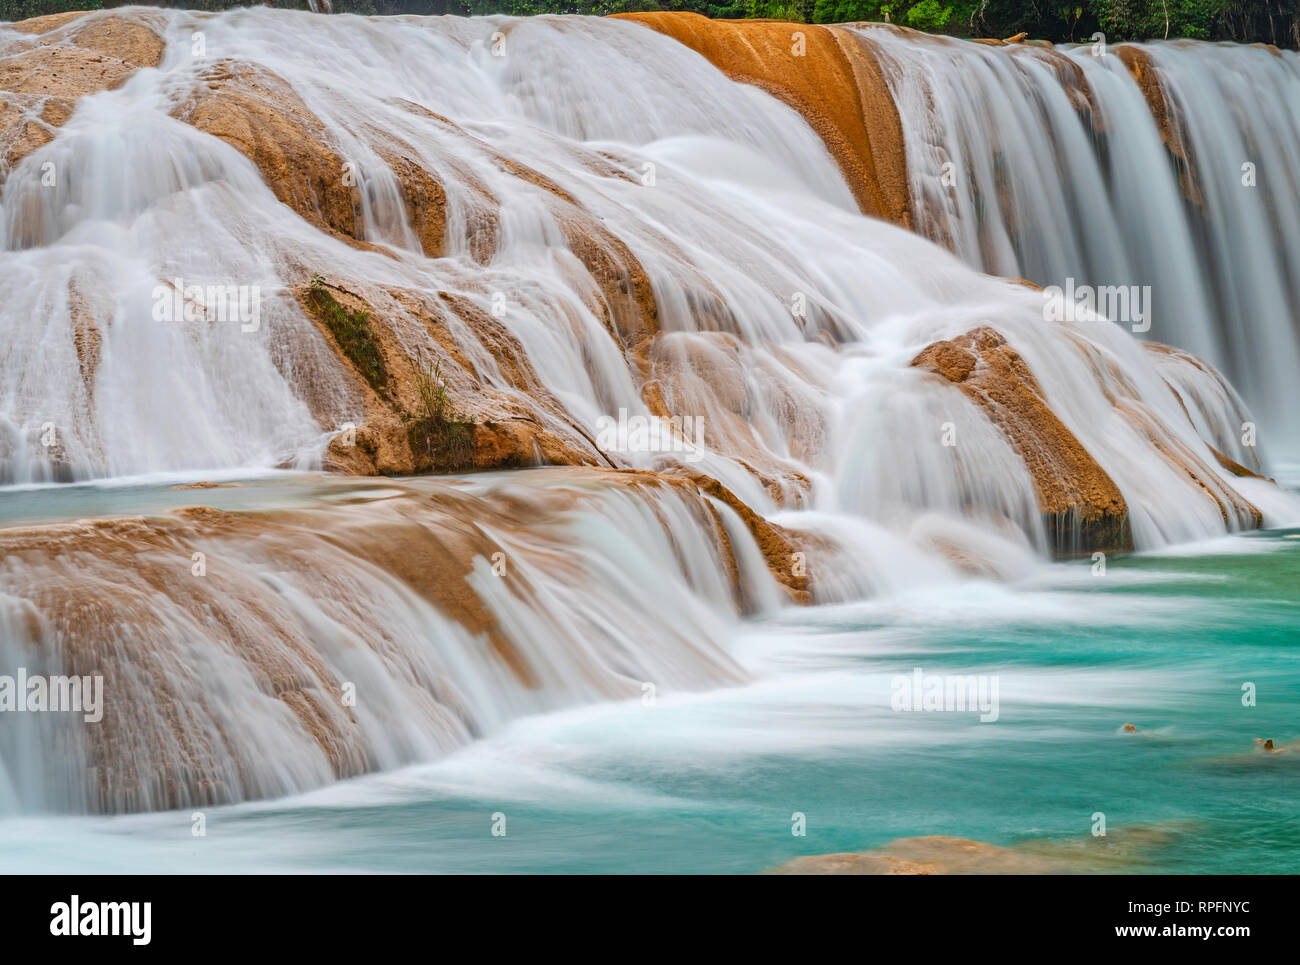 La majestueuse eaux turquoise de l'Agua Azul cascades et chutes le long d'une crête calcaire près de Palenque, l'état du Chiapas, au Mexique. Banque D'Images